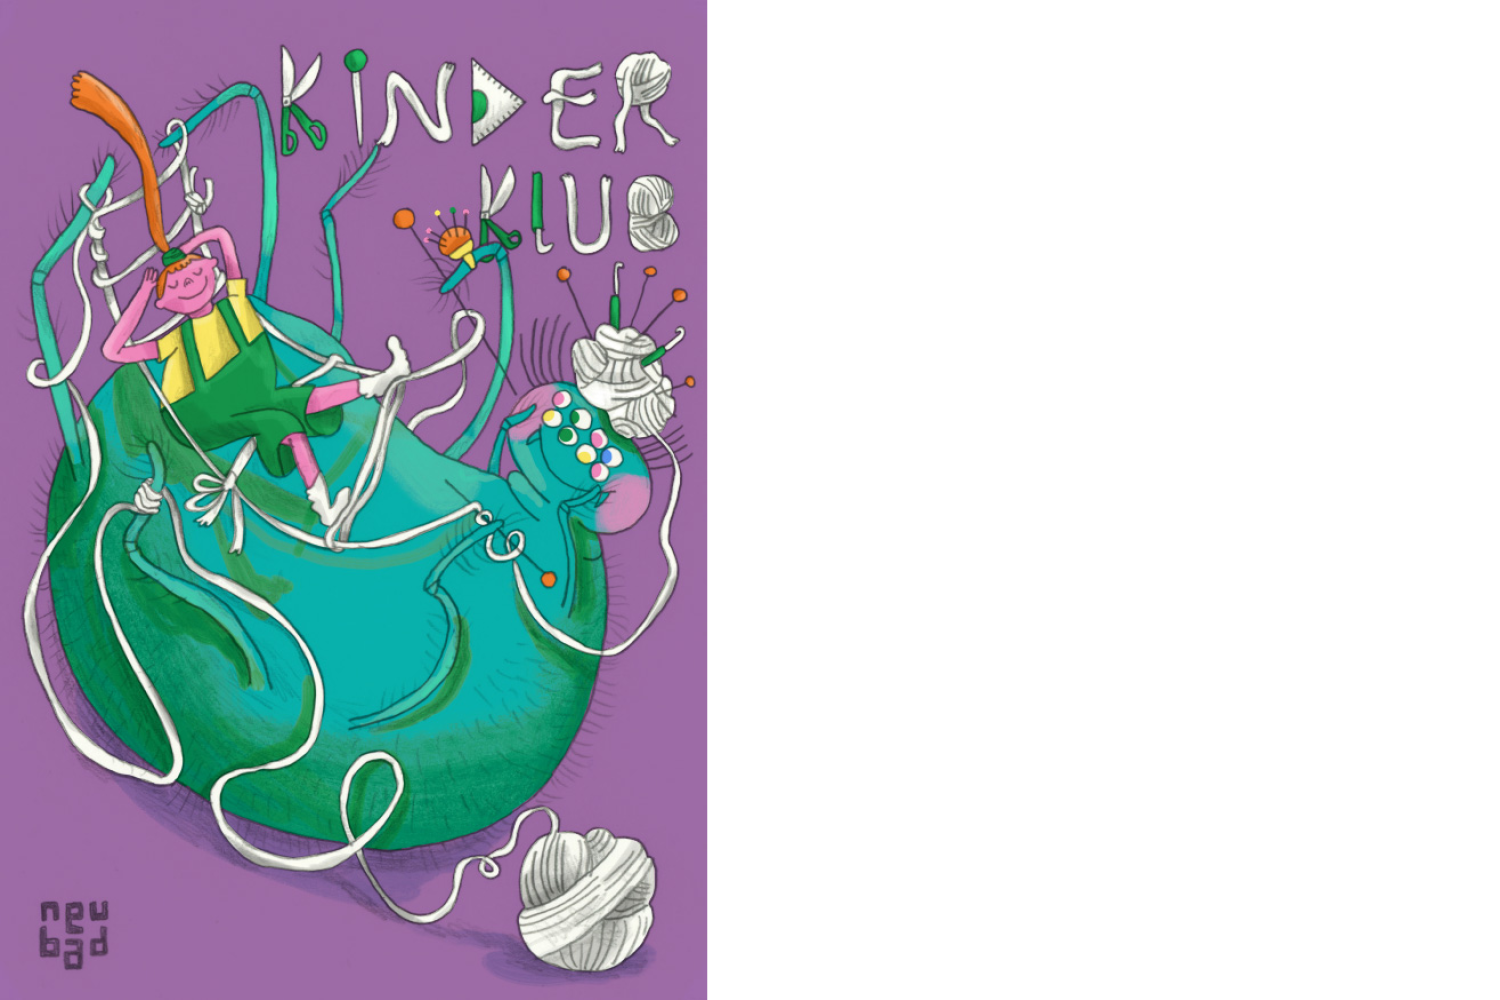 Illustration für den Kinderklub Workshop: Spinnereien mit einer grünen Spinne, die auf dem Rücken liegt und zwischen ihren Beinen eine Hängematte strickt. Darin liegt ein Kind und entspannt gemütlich.